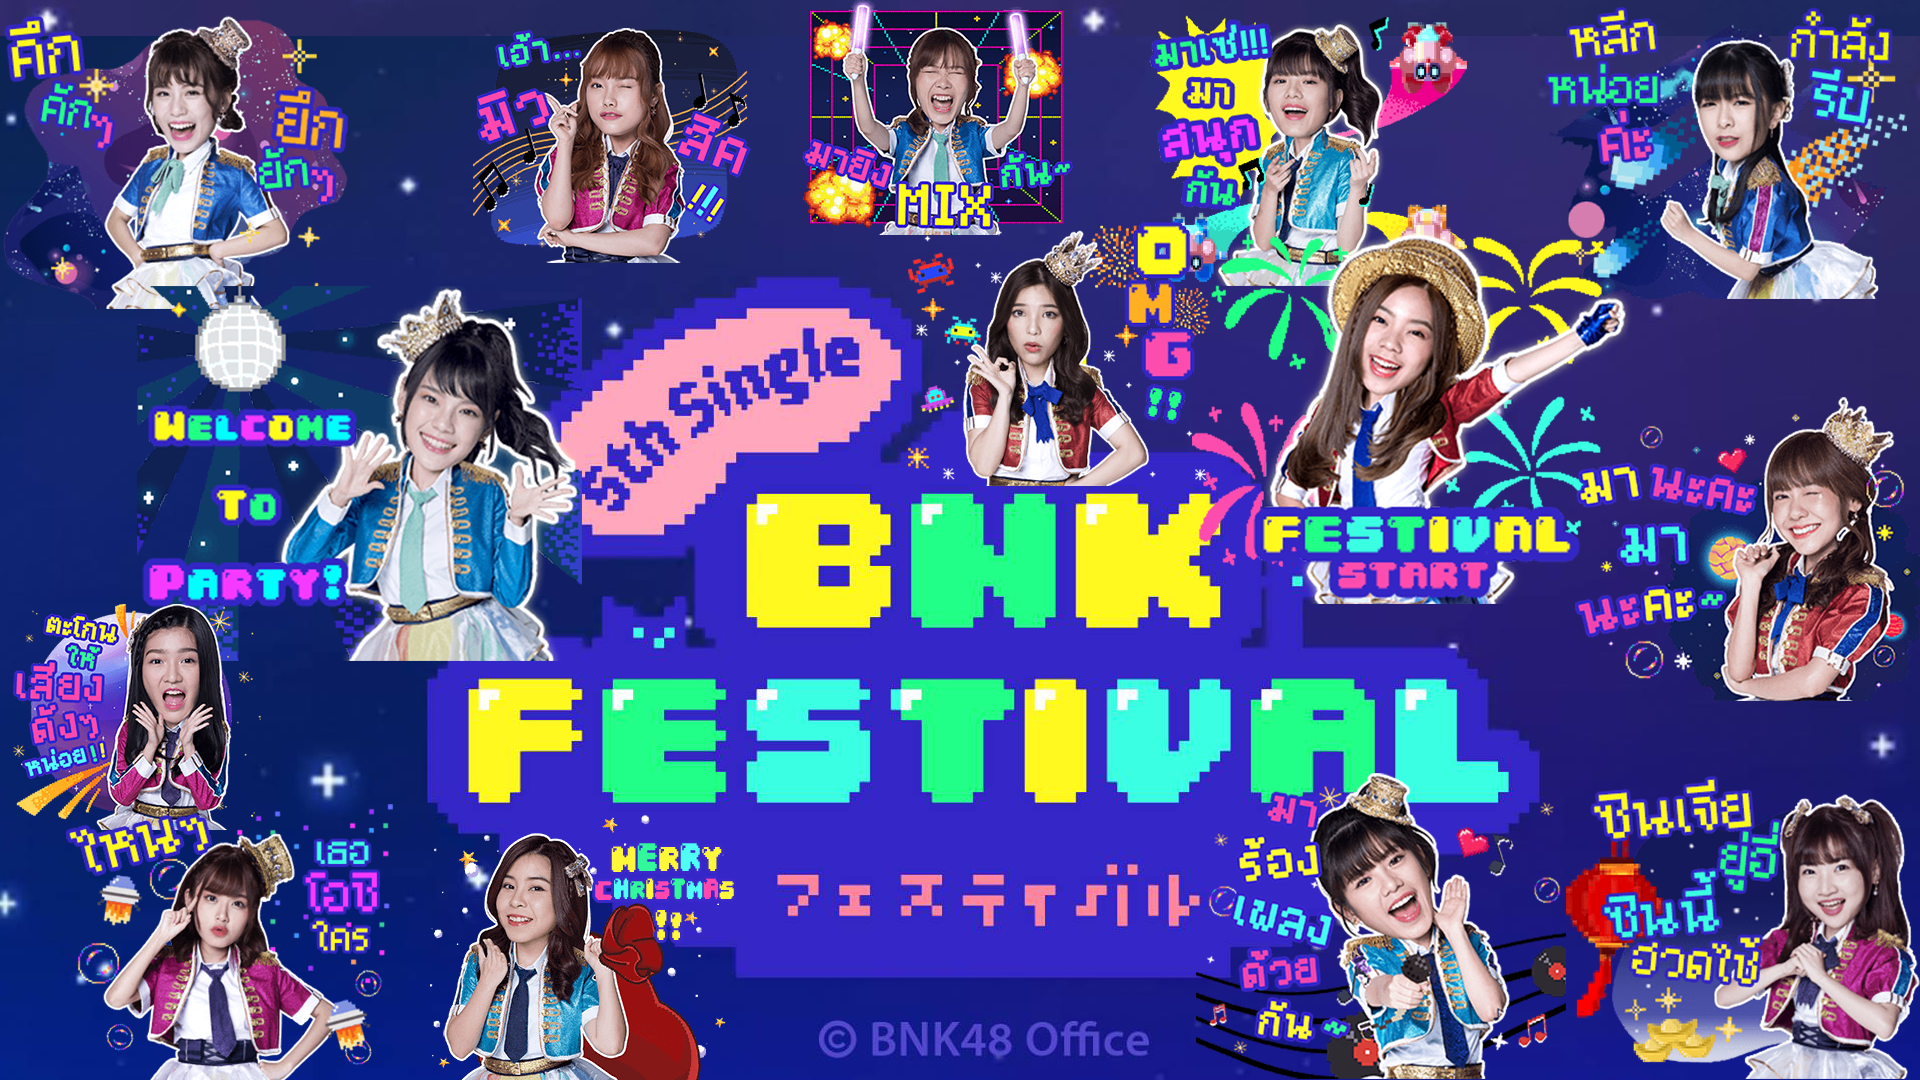 เทศกาล BNK Festival กับ BNK48 Official Line Stickers & Theme ของ Single ที่ 5